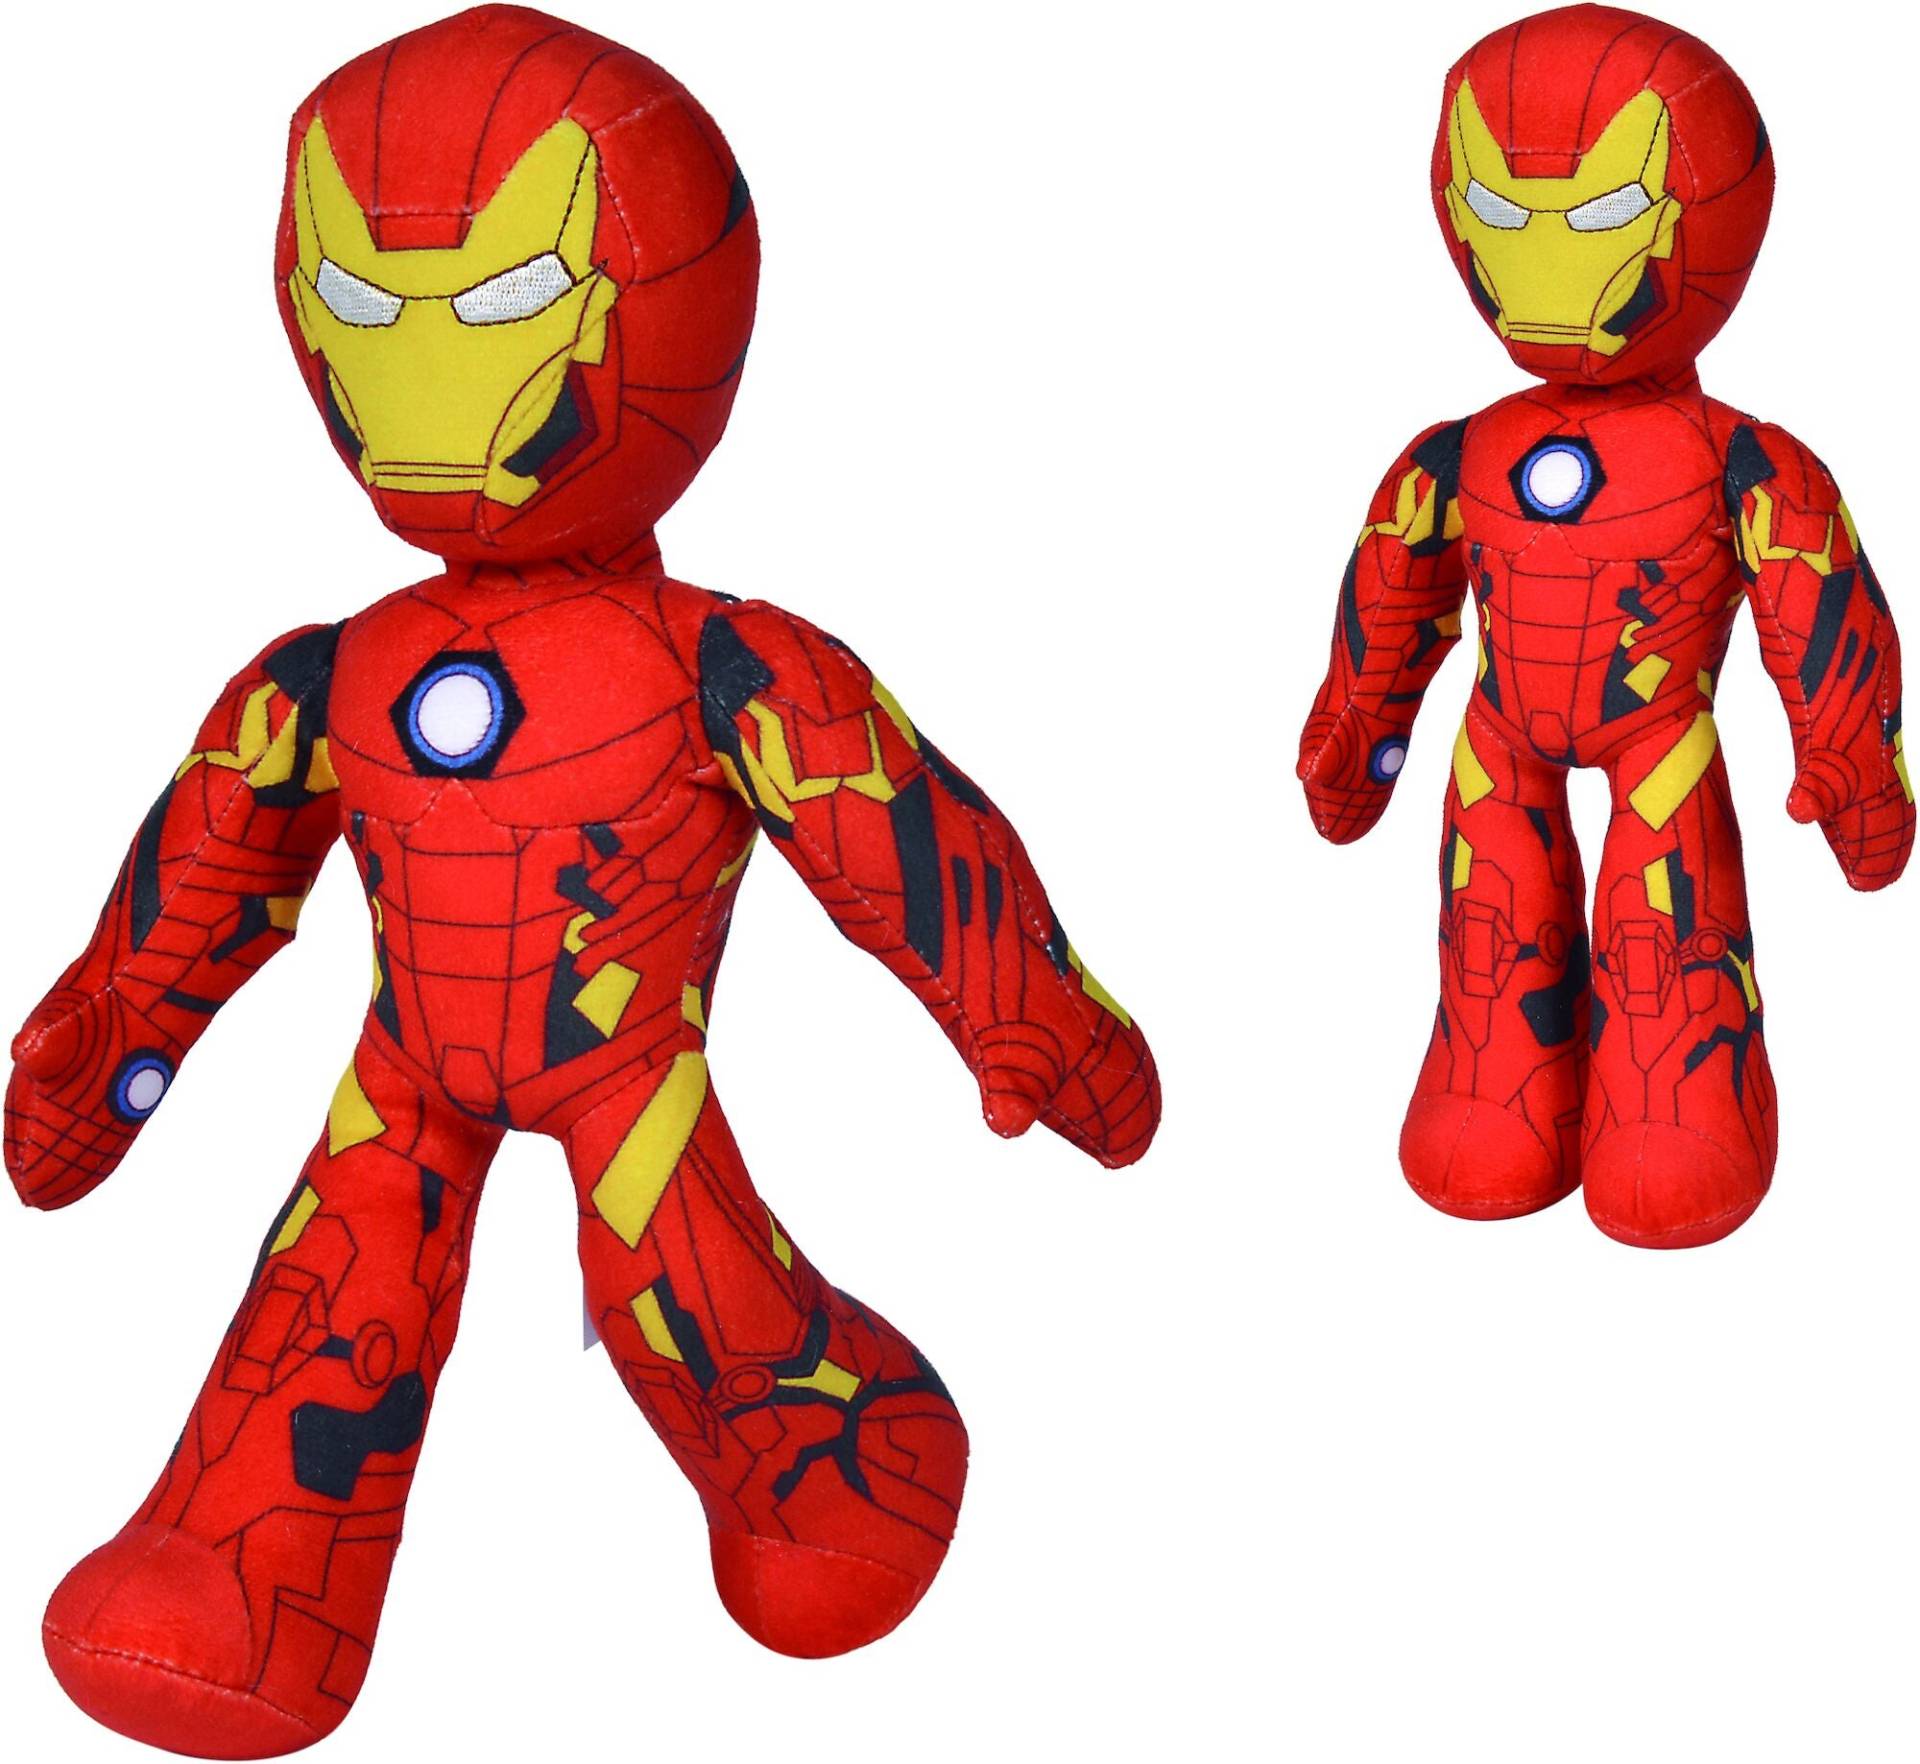 Marvel Avengers Iron Man 25 cm Kuscheltier von Marvel Avengers